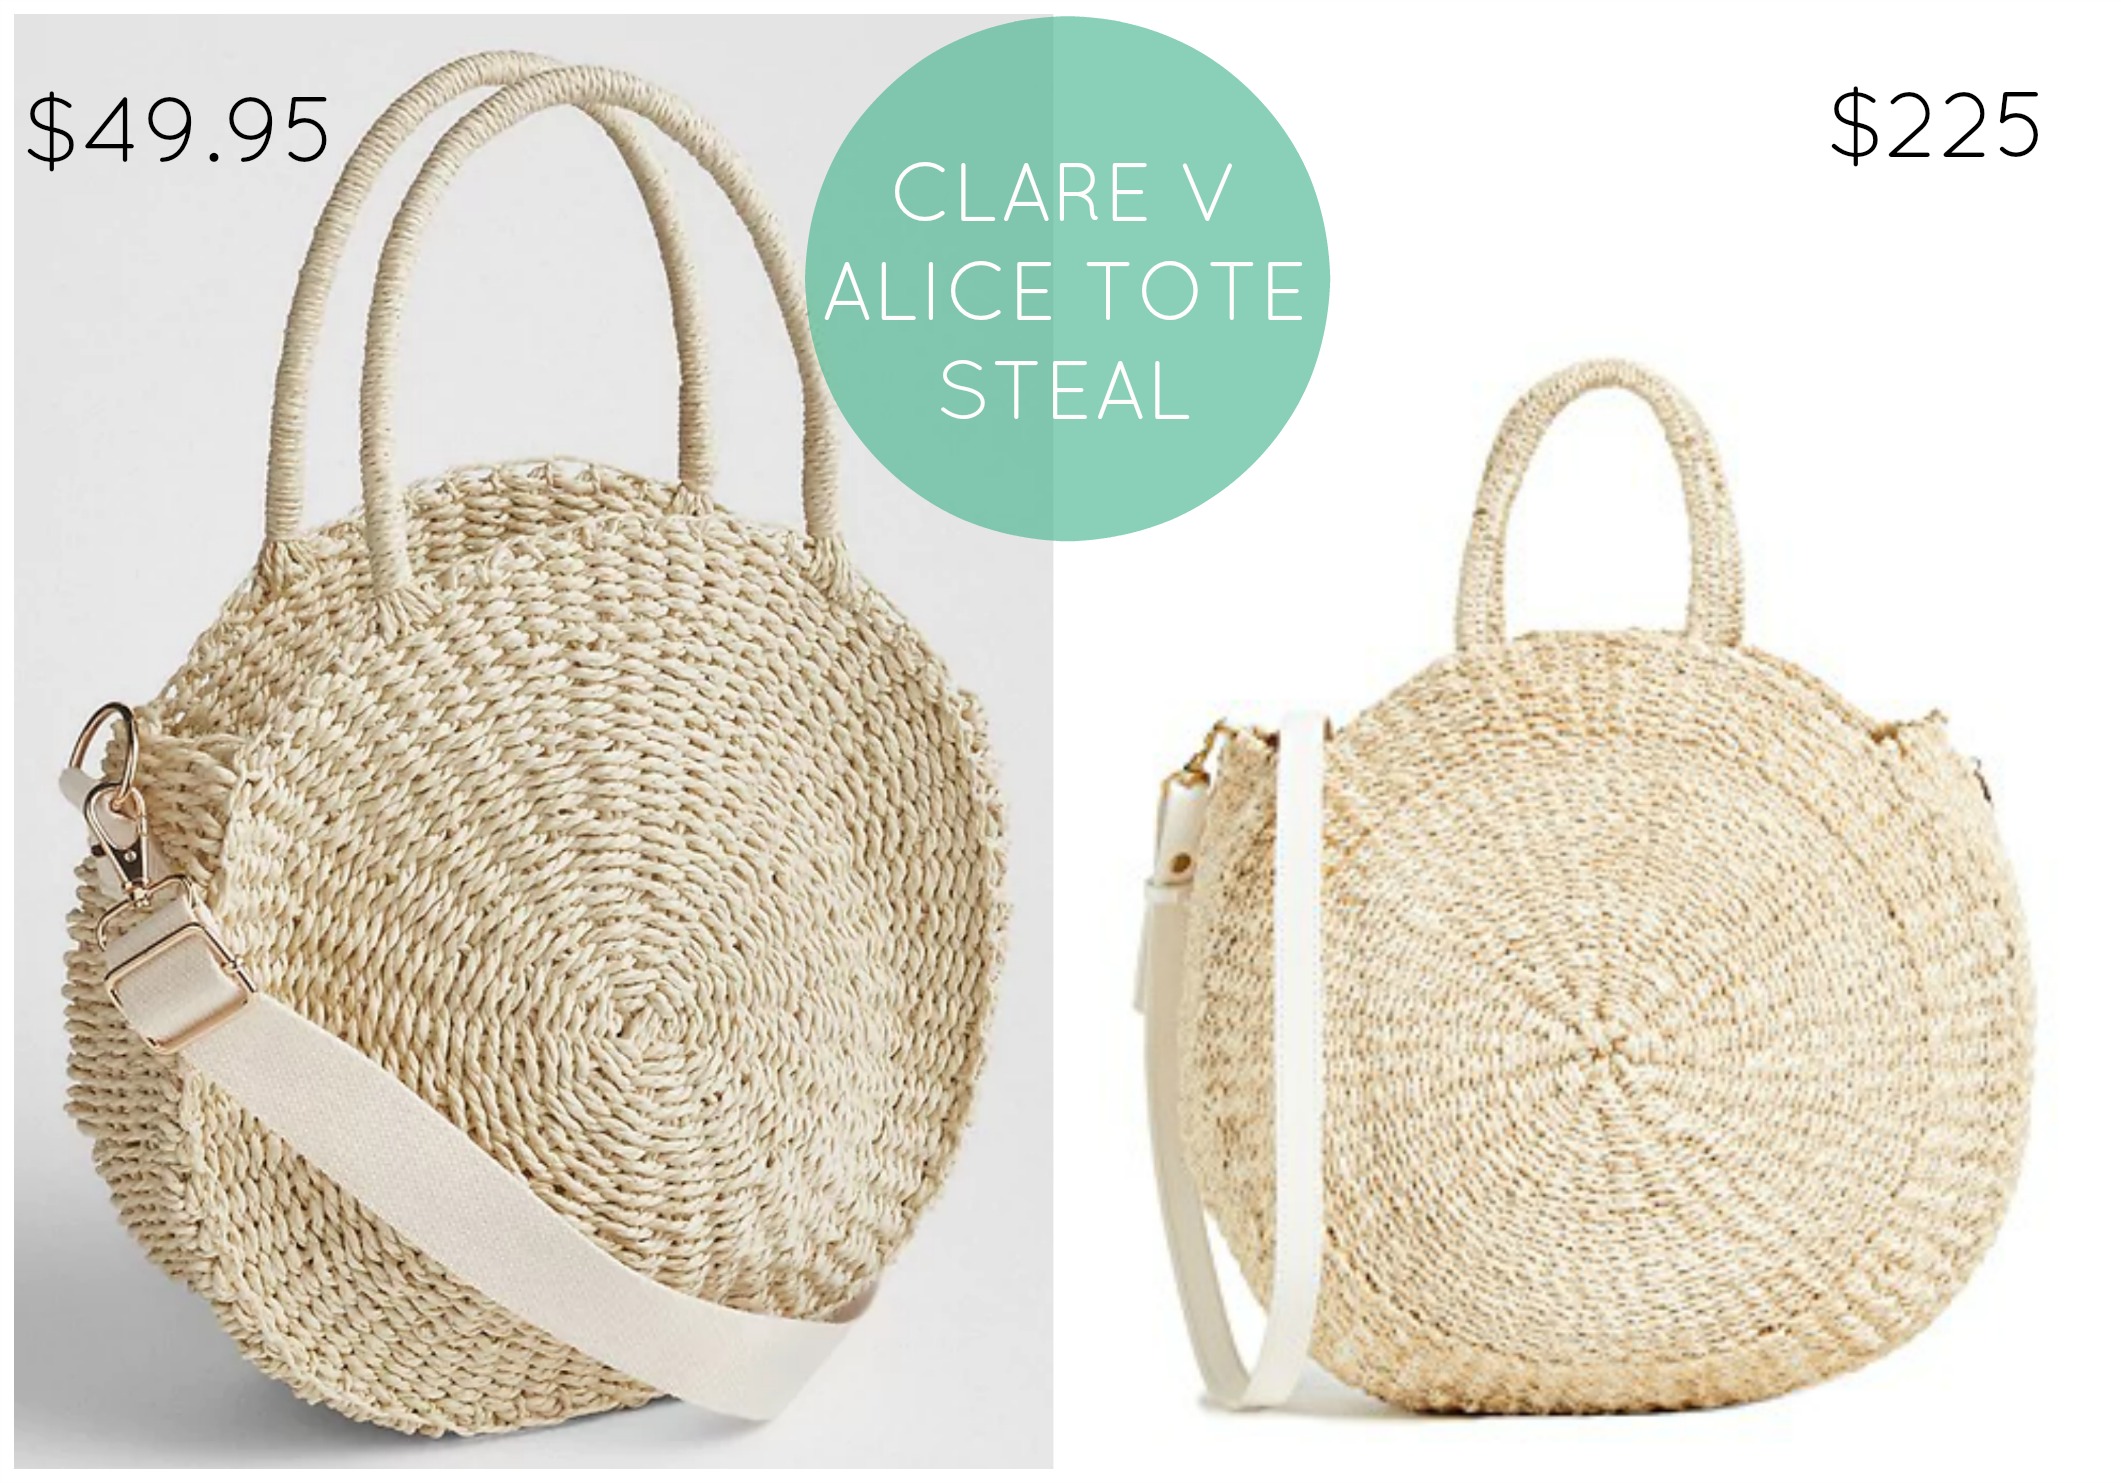 Clare V Alice Tote Steal